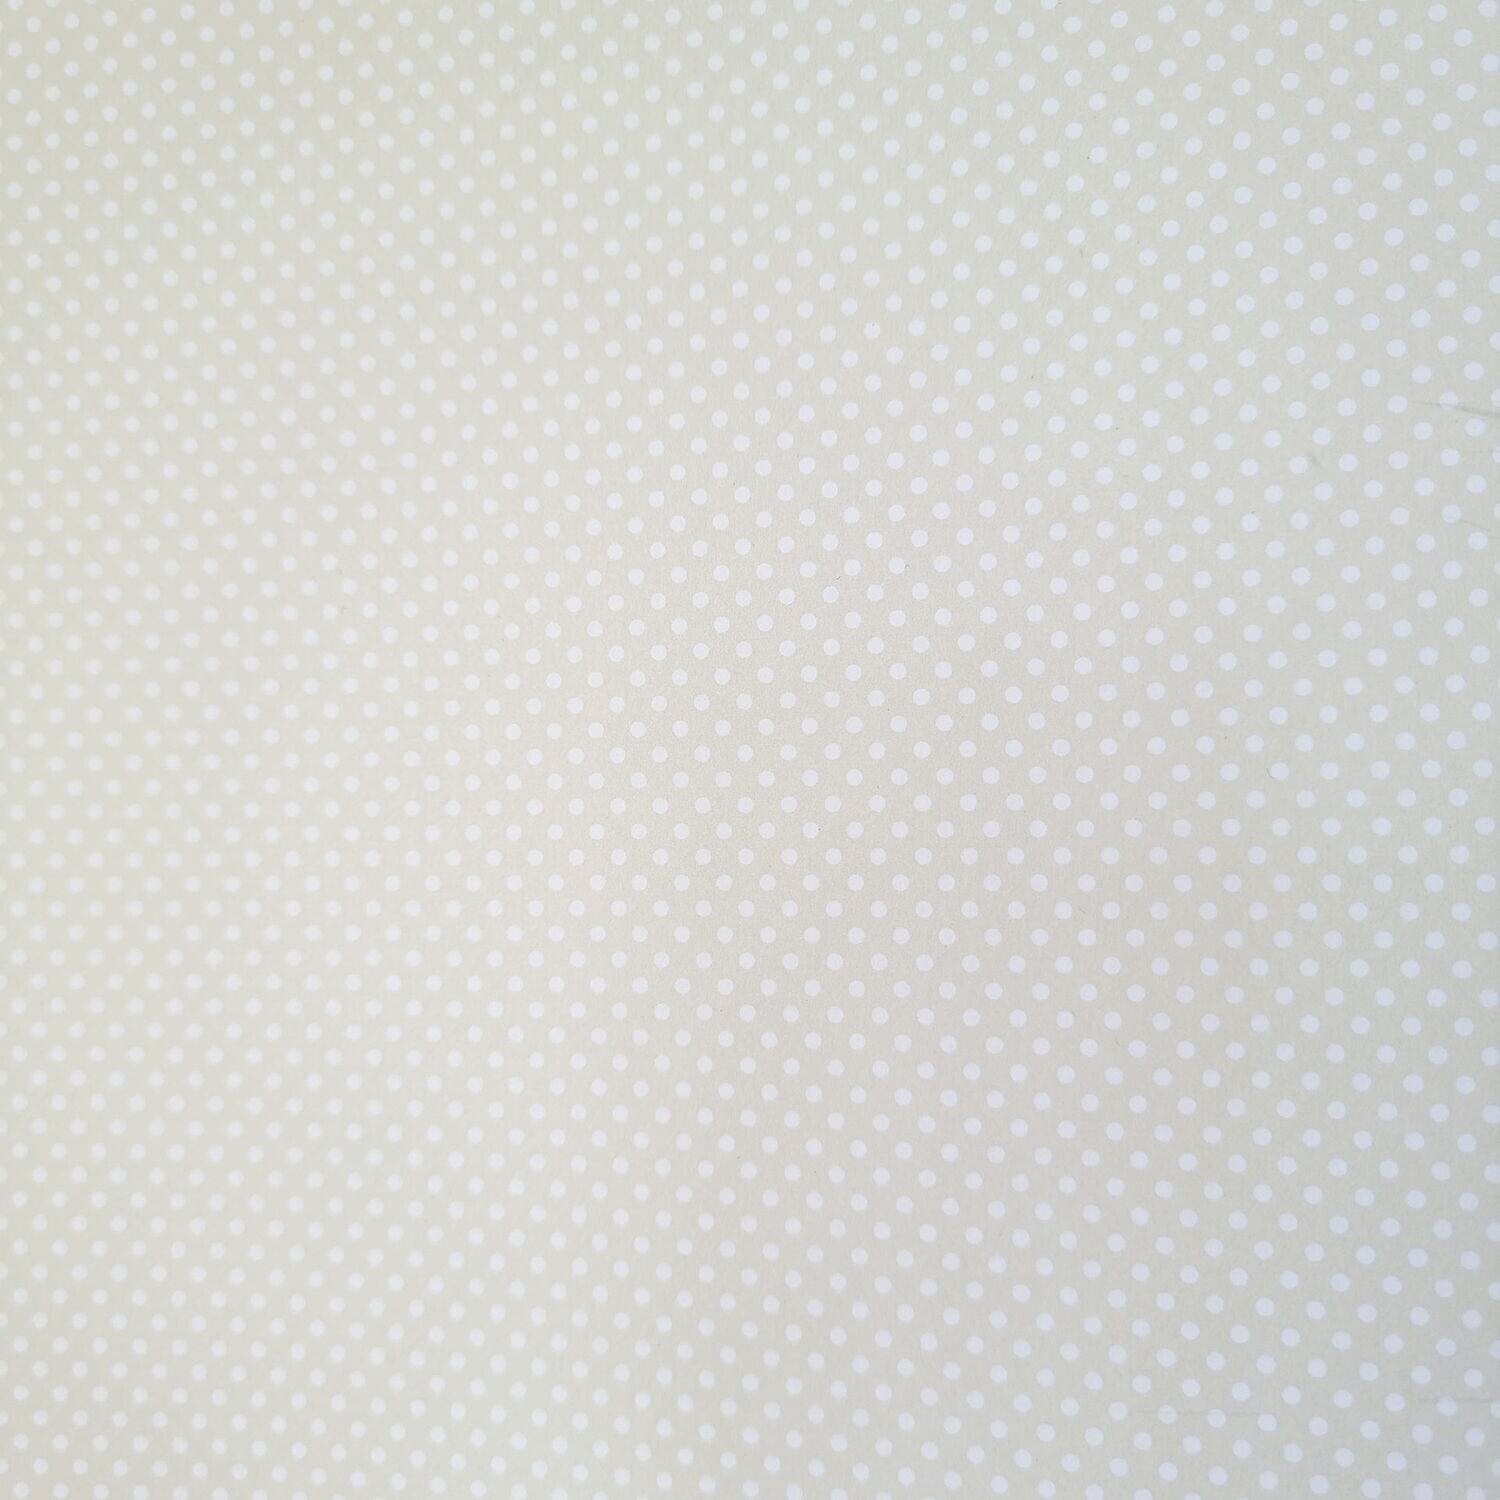 Mini Dots creme mit weißen Punkten